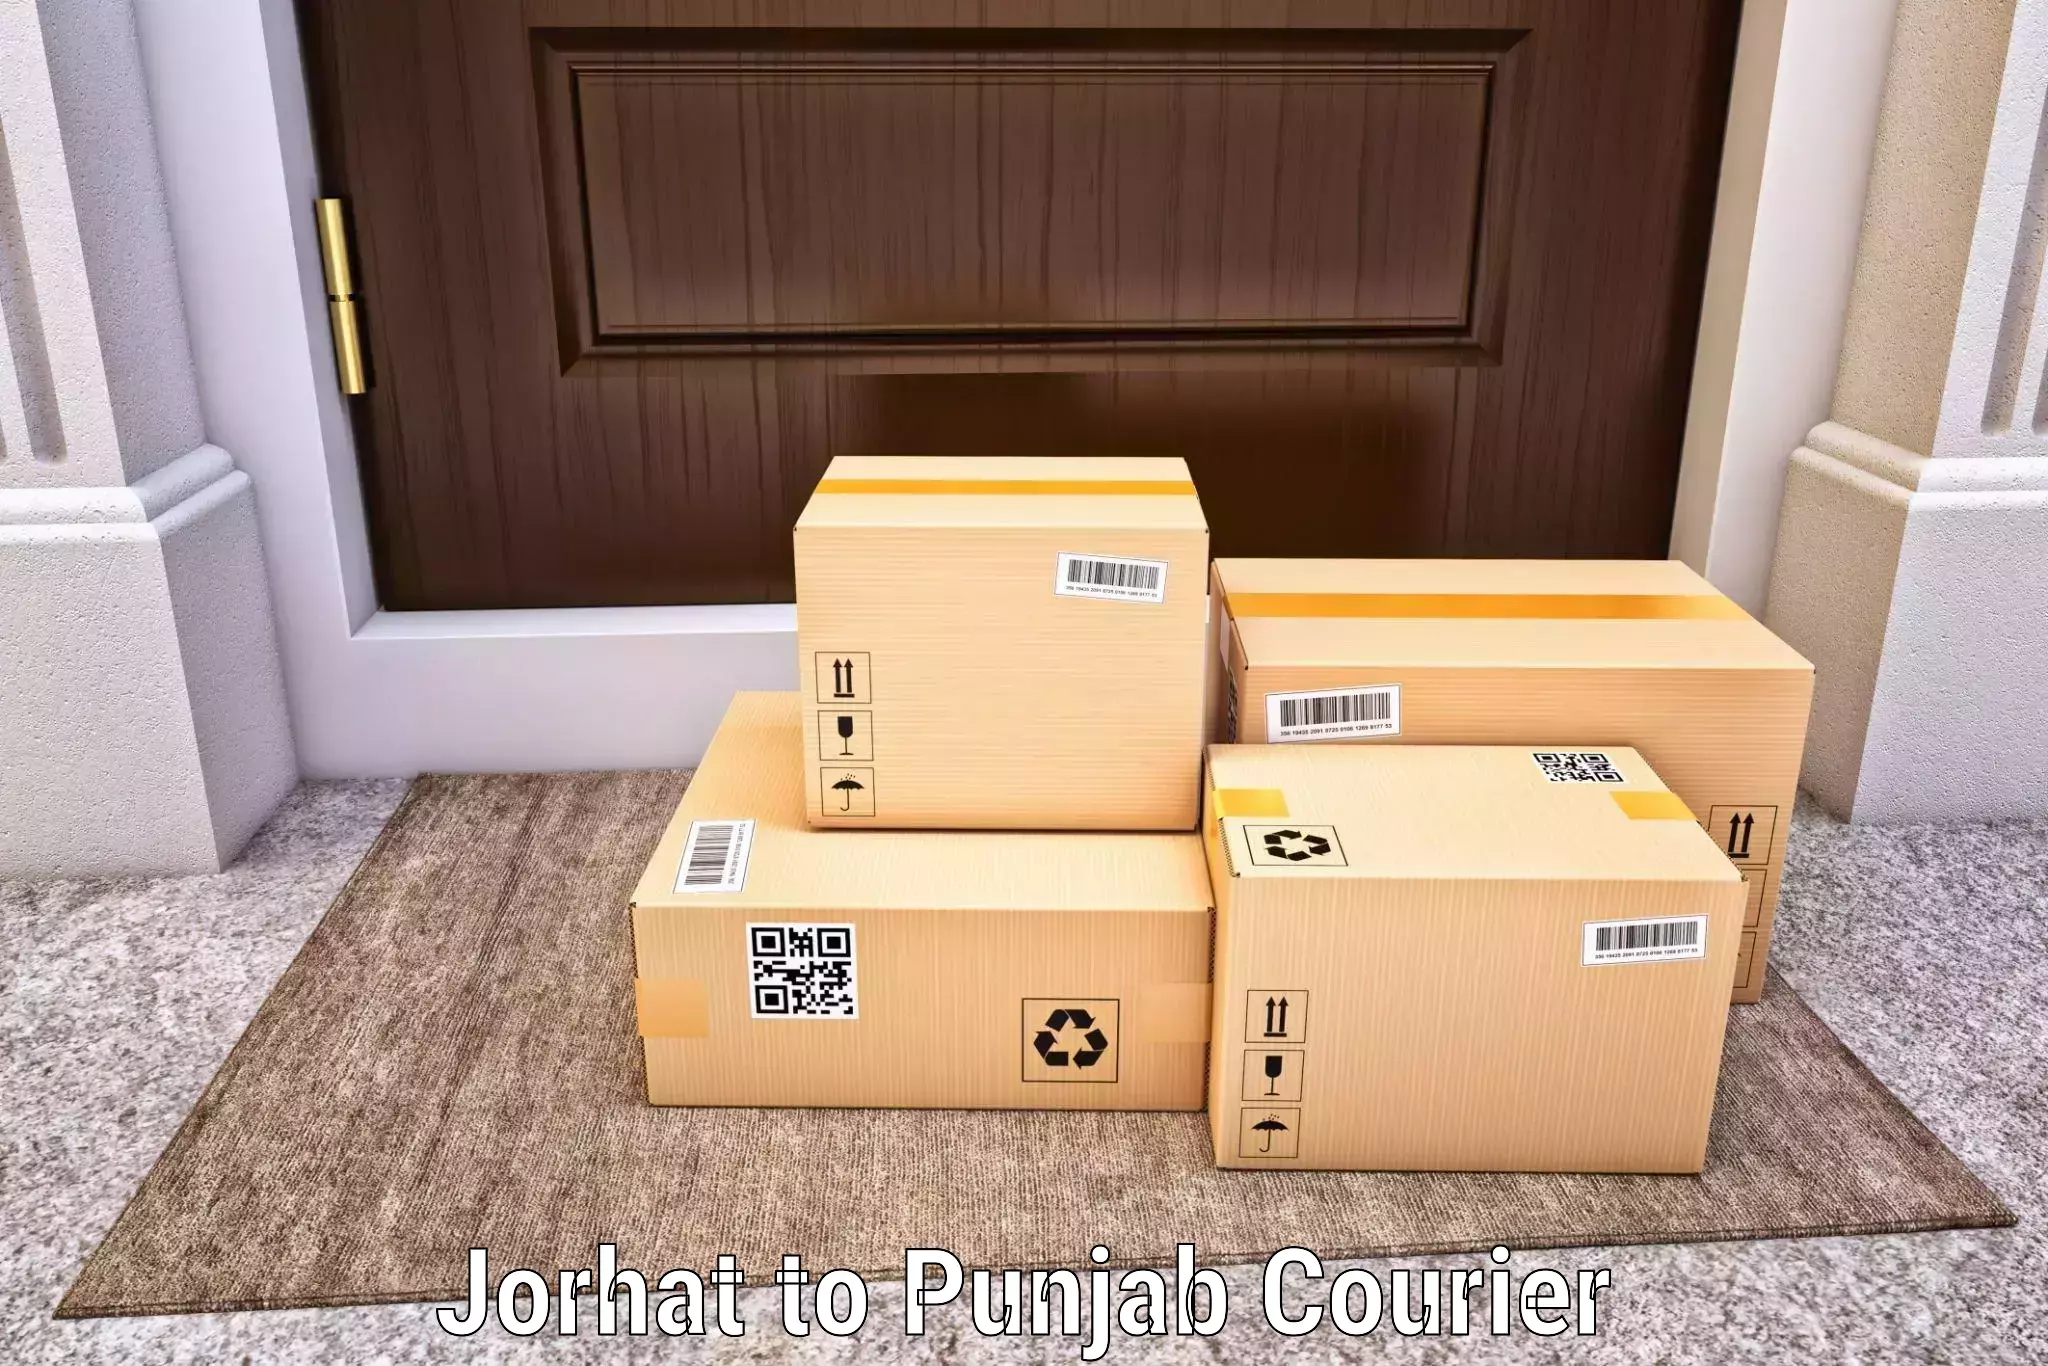 Efficient parcel tracking Jorhat to Sirhind Fatehgarh